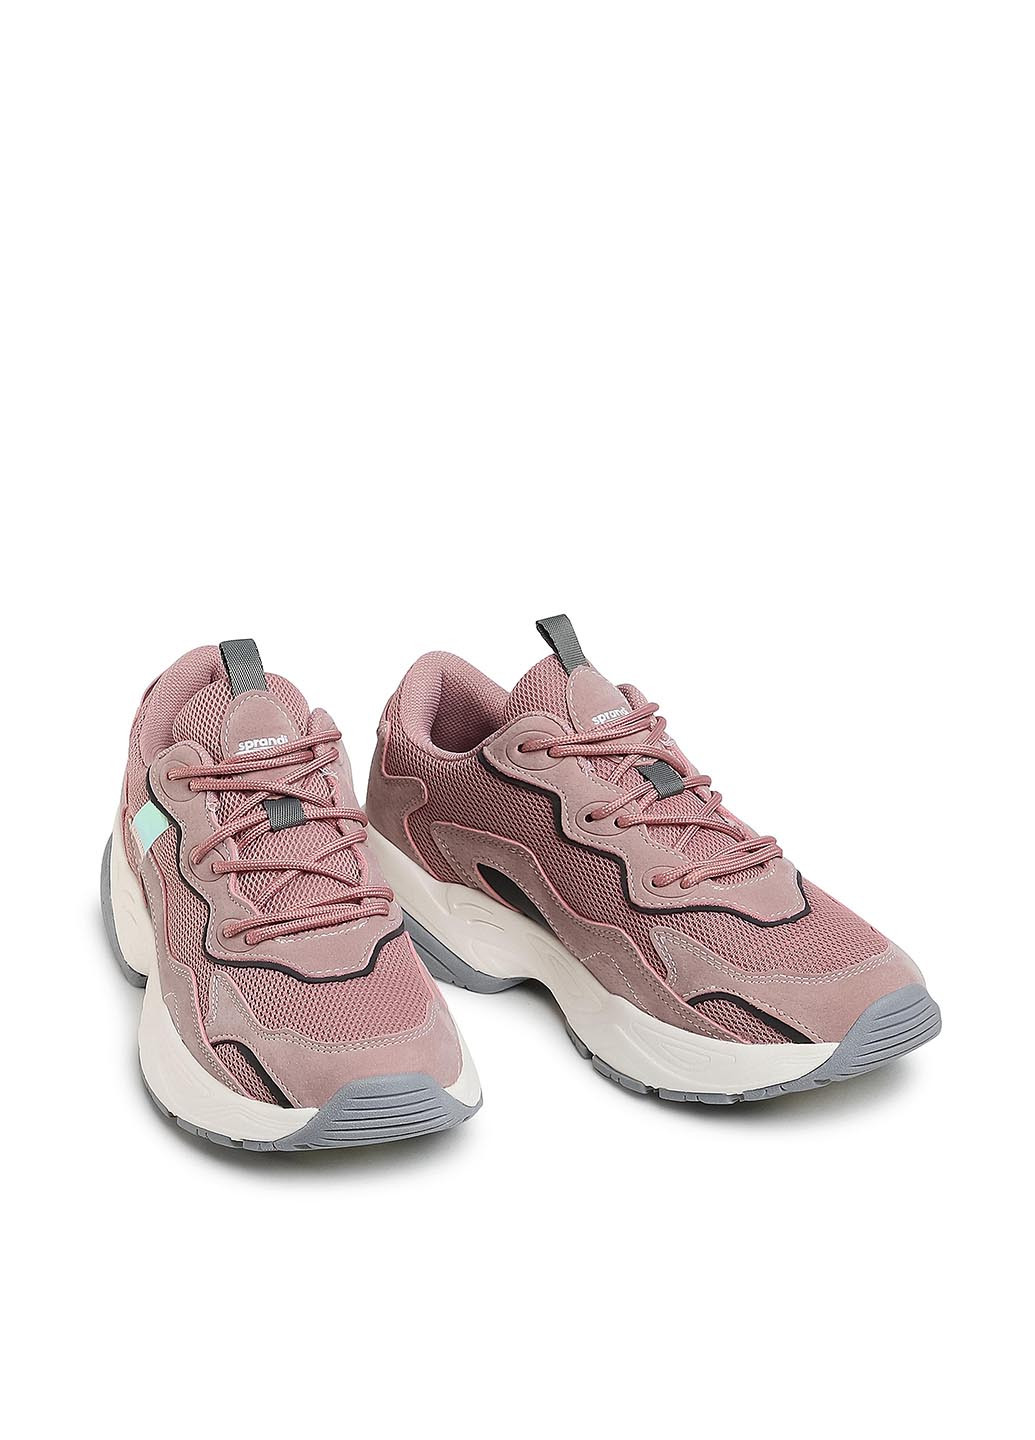 Розово-лиловые демисезонные кросівки Sprandi WP07-KSC19W021